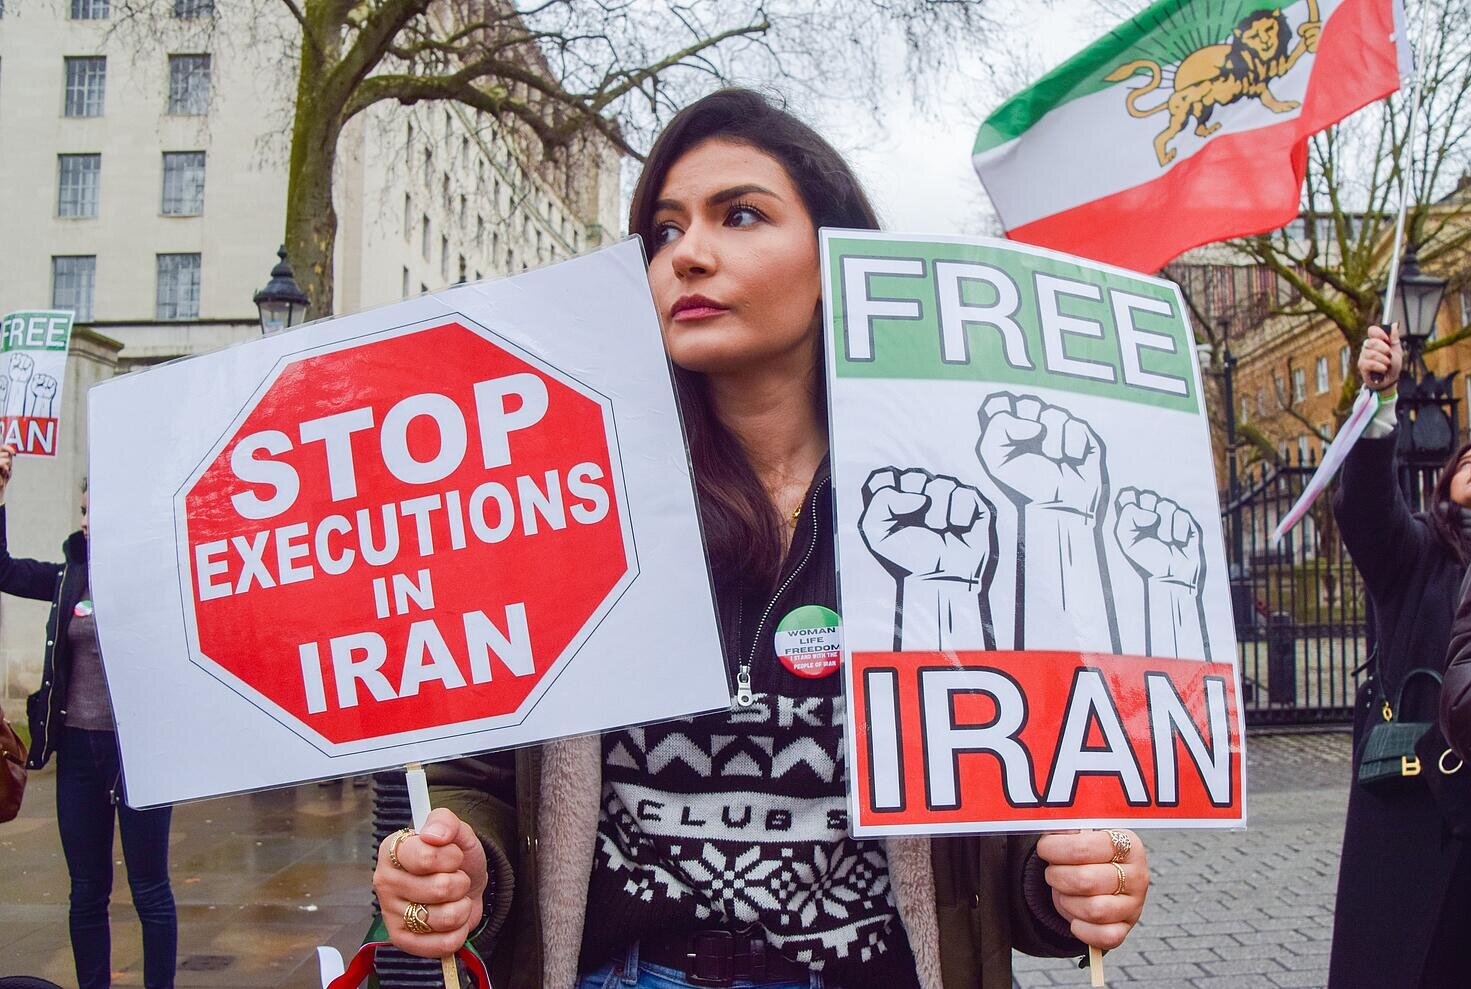 Manifestante con carteles contra la pena de muerte y por la libertad en Irán.